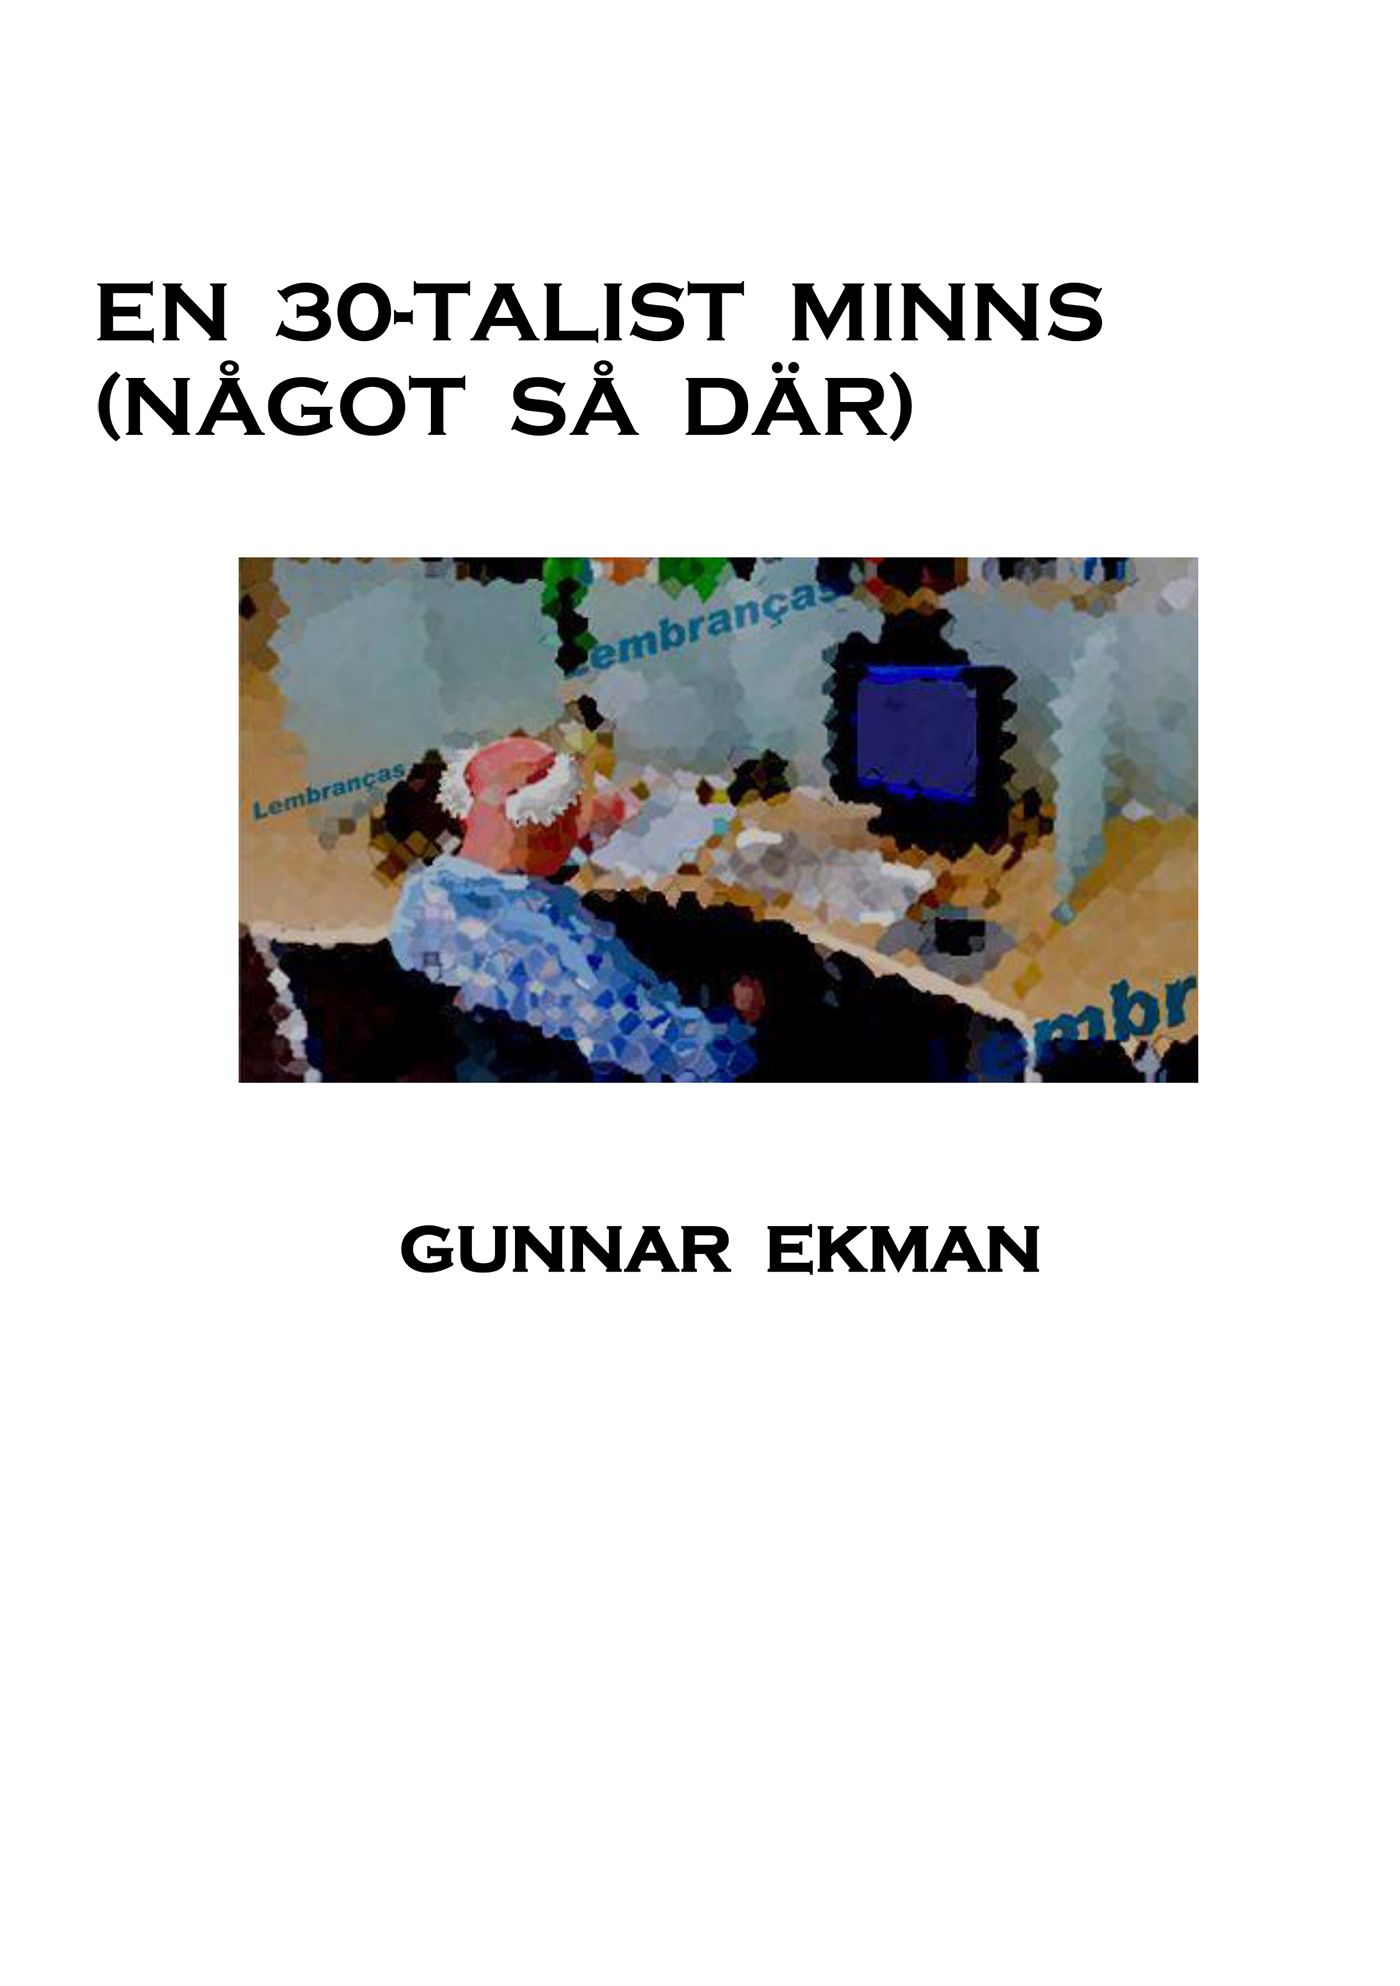 En 30-talist minns (Något så där), e-bok av Gunnar Ekman